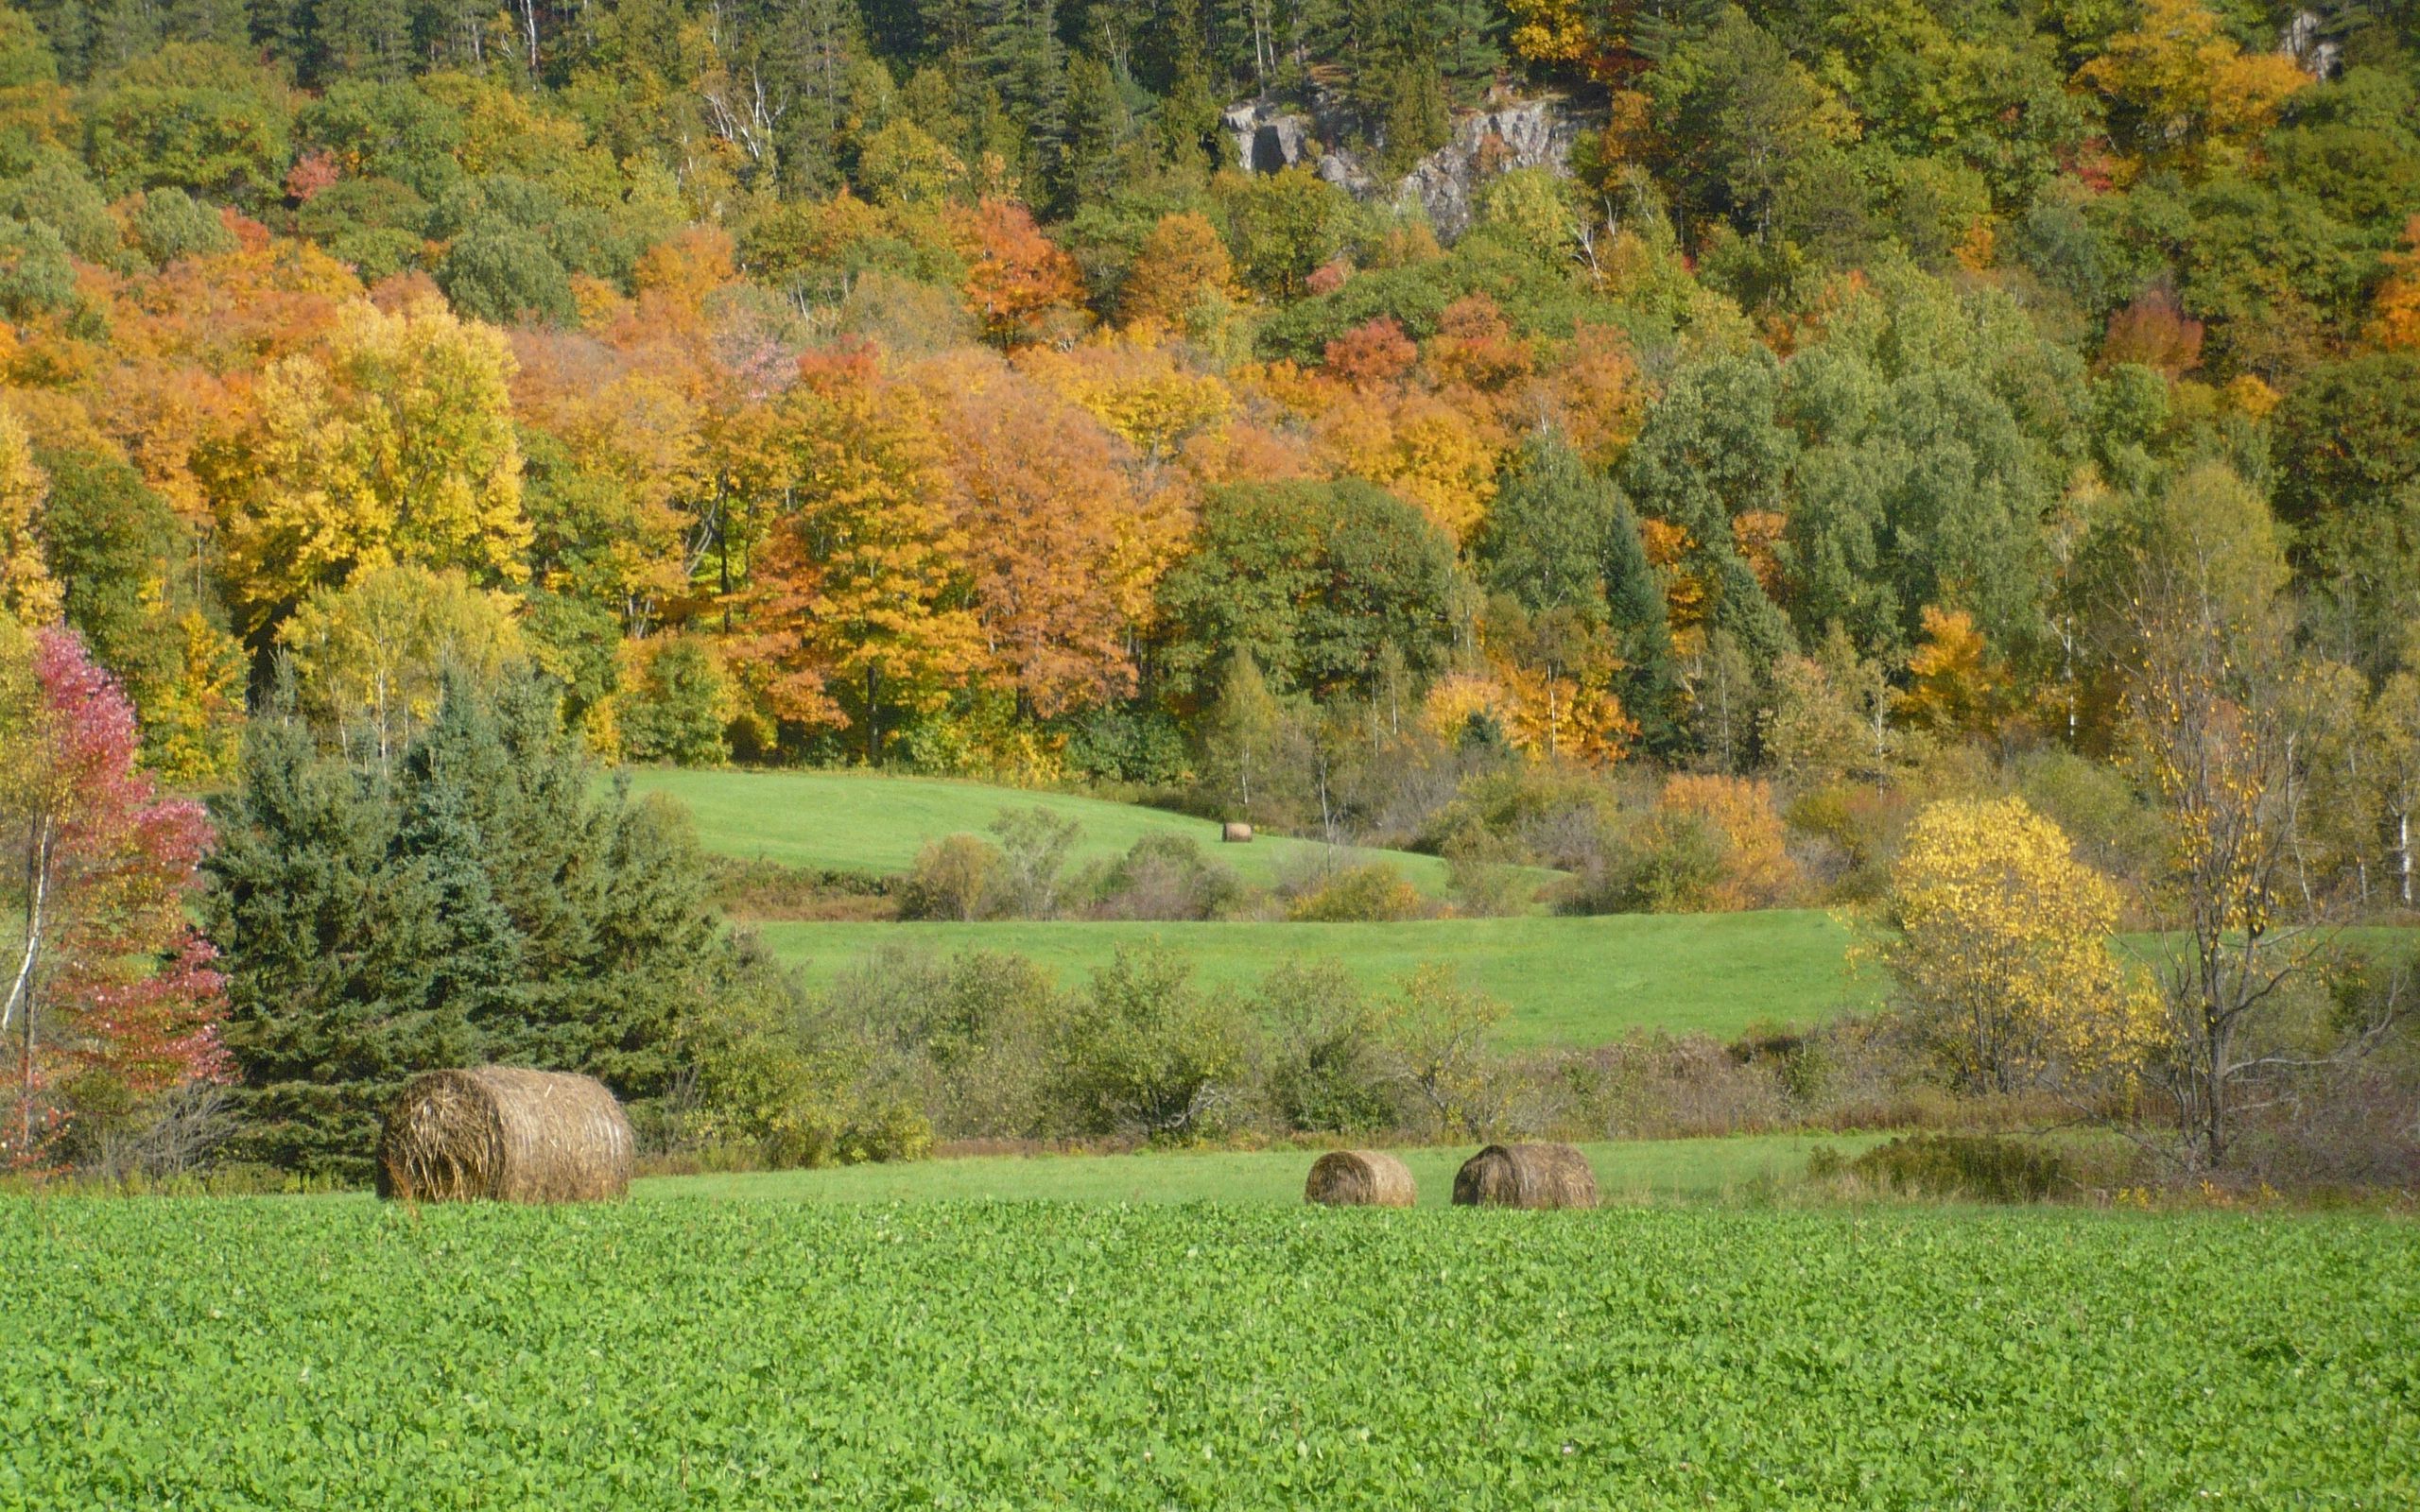 Download wallpaper 2560x1600 field, grass, trees, autumn widescreen 16:10 HD background